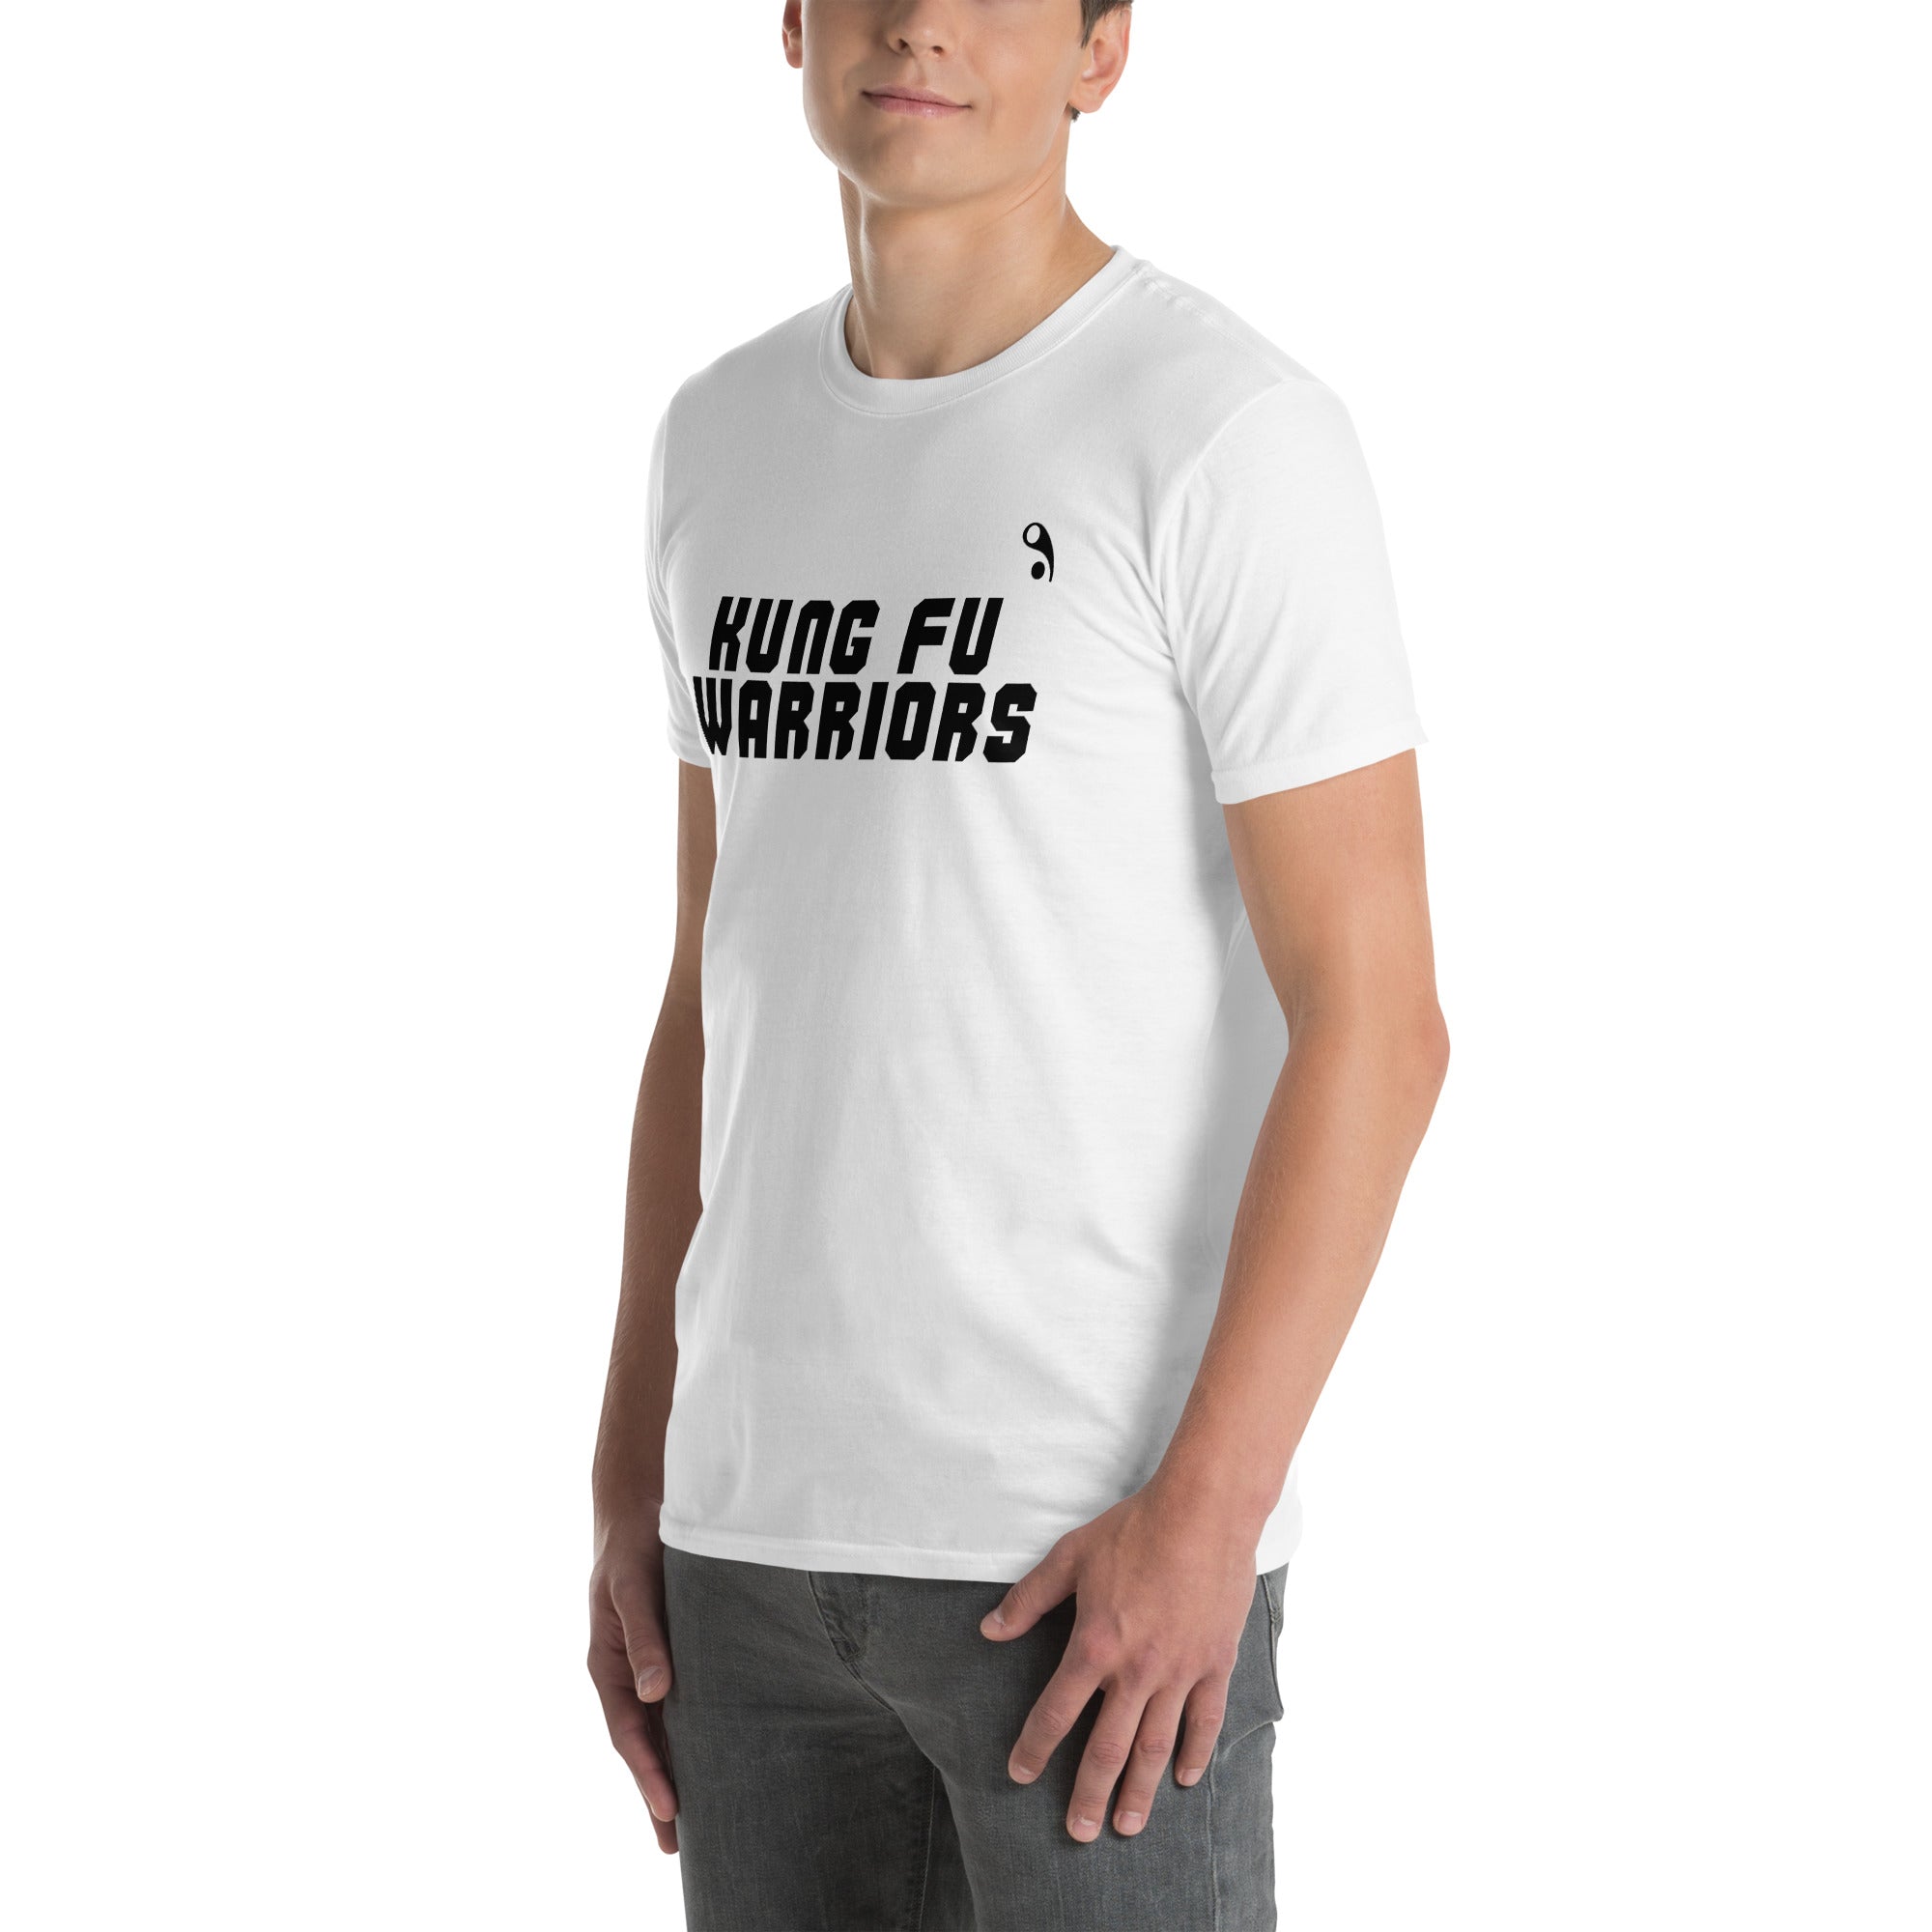 Kung Fu Warriors White Short-Sleeve Unisex T-Shirt